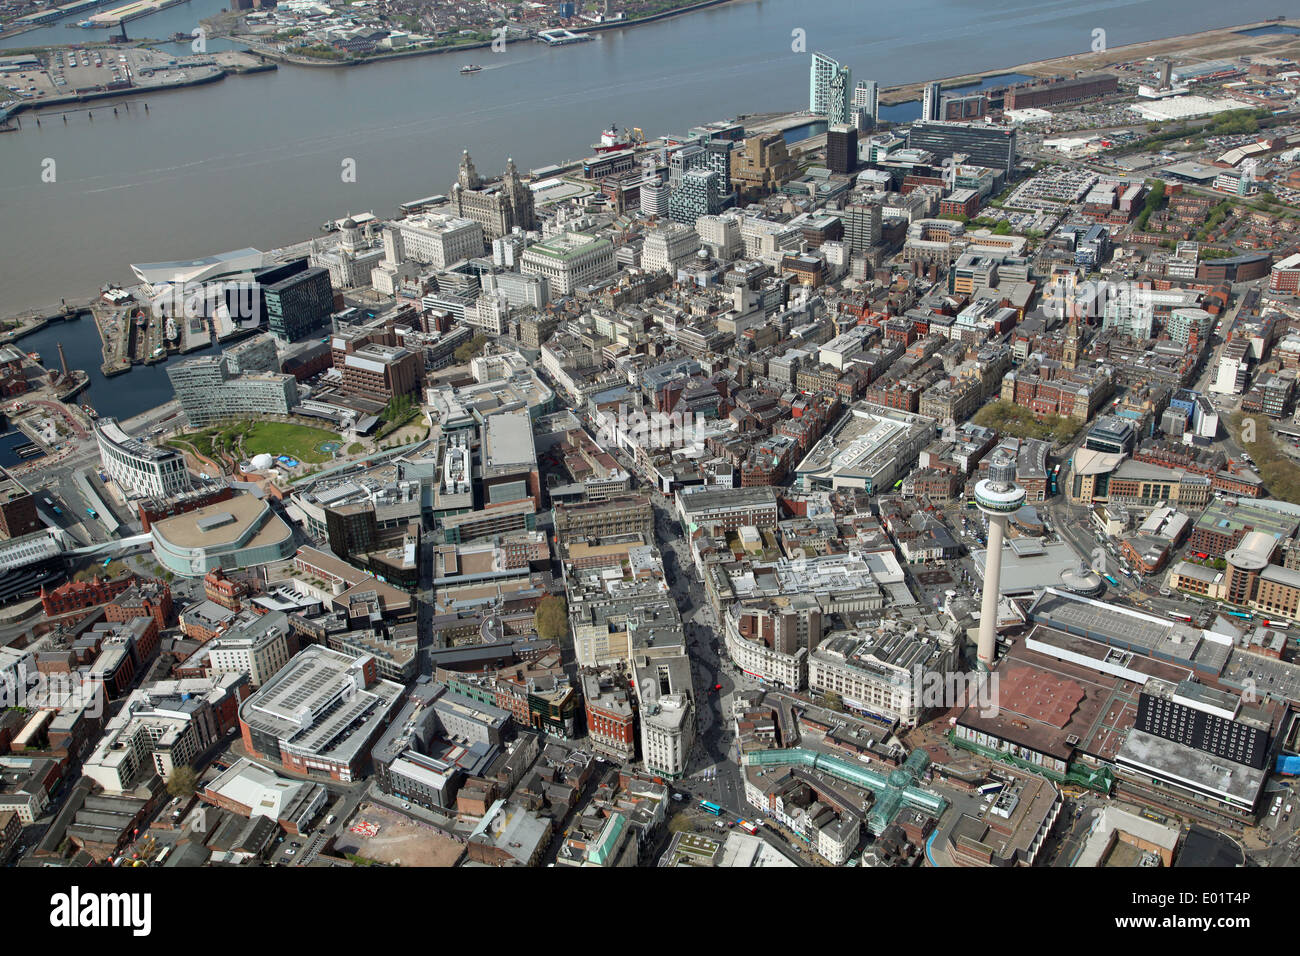 Vista aerea del centro città di Liverpool cercando dalla Radio City Tower al Liver Building e sul fiume Mersey Foto Stock